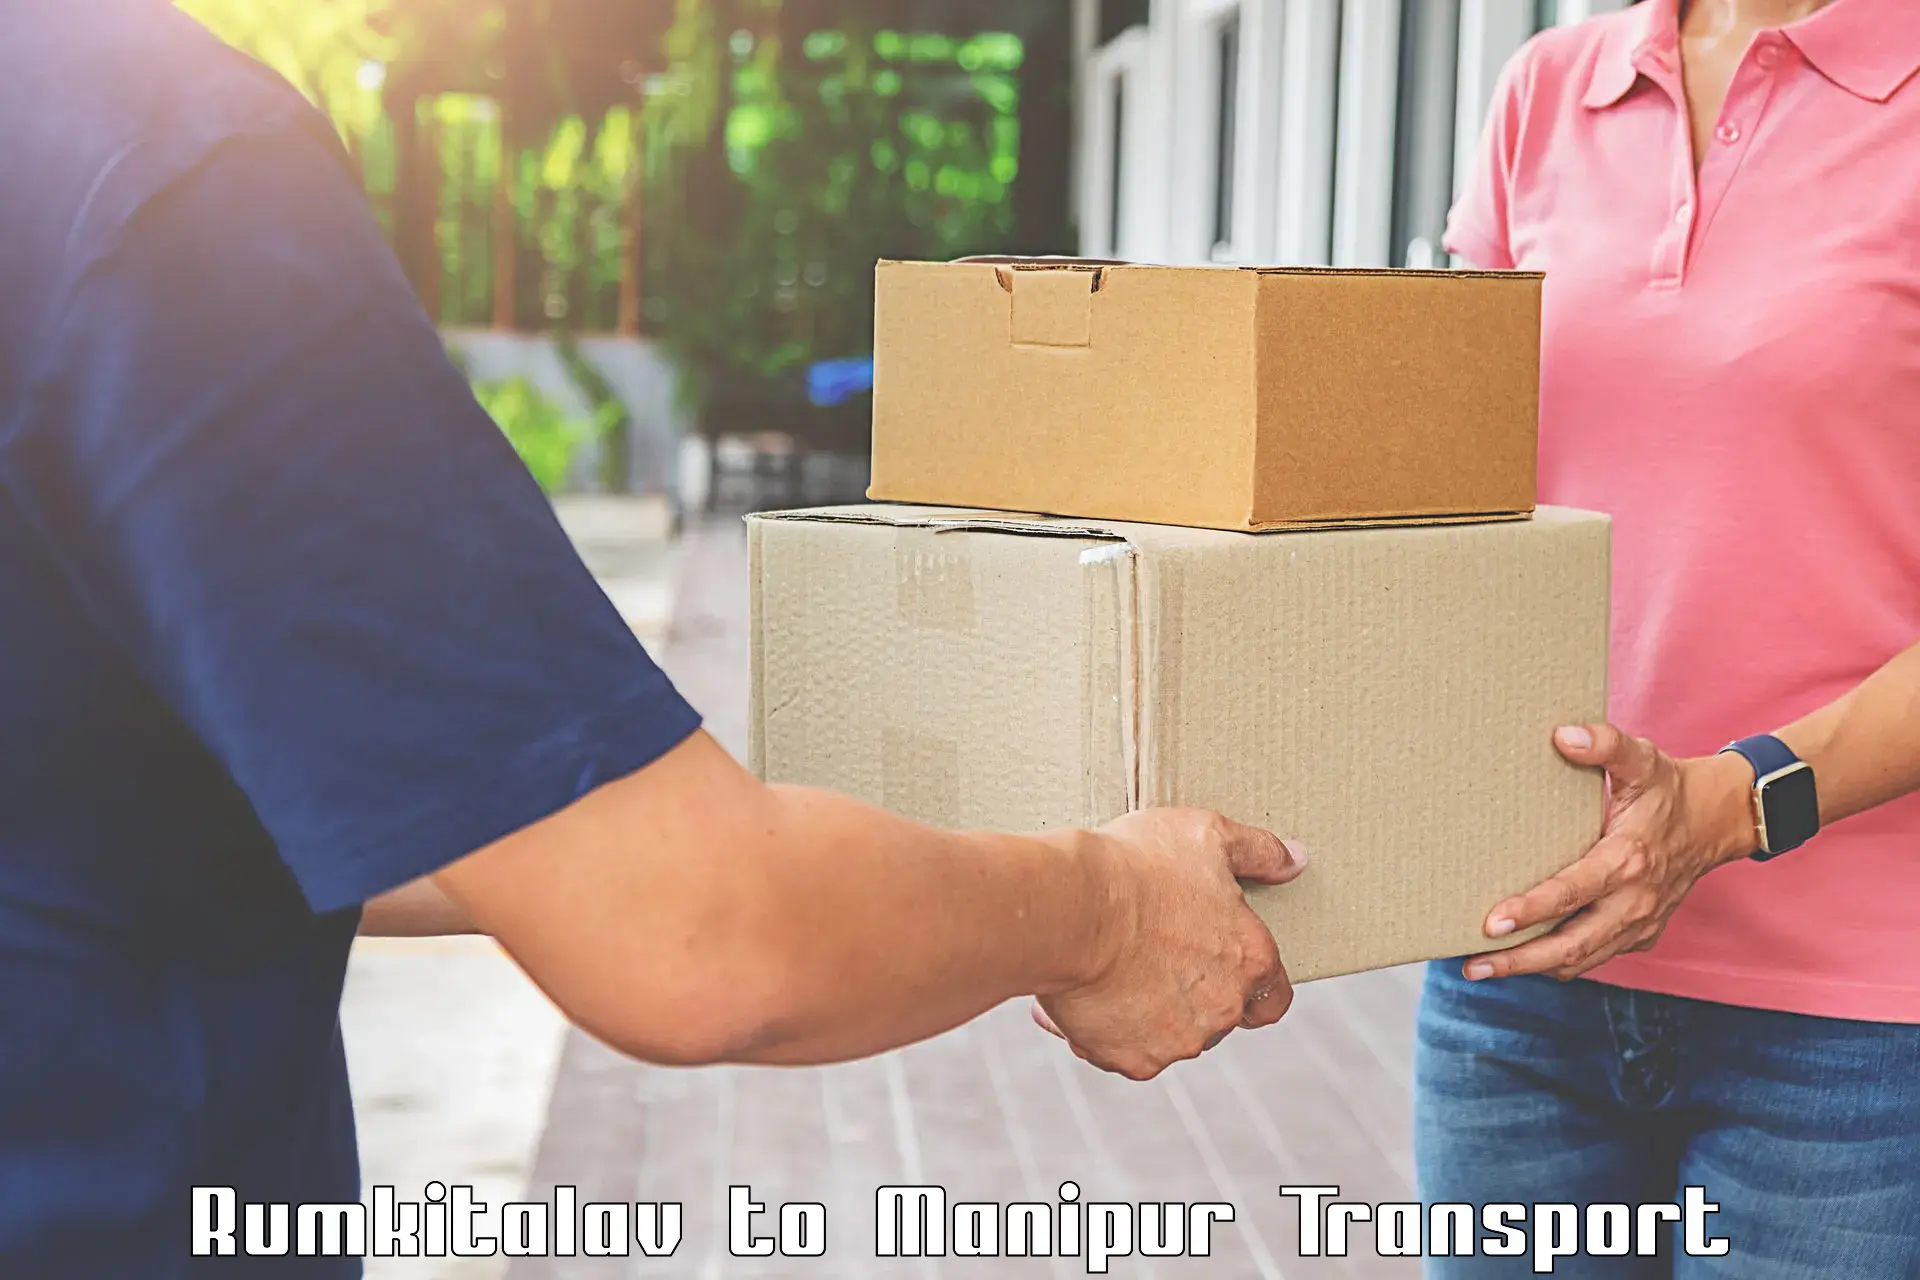 International cargo transportation services Rumkitalav to Kangpokpi